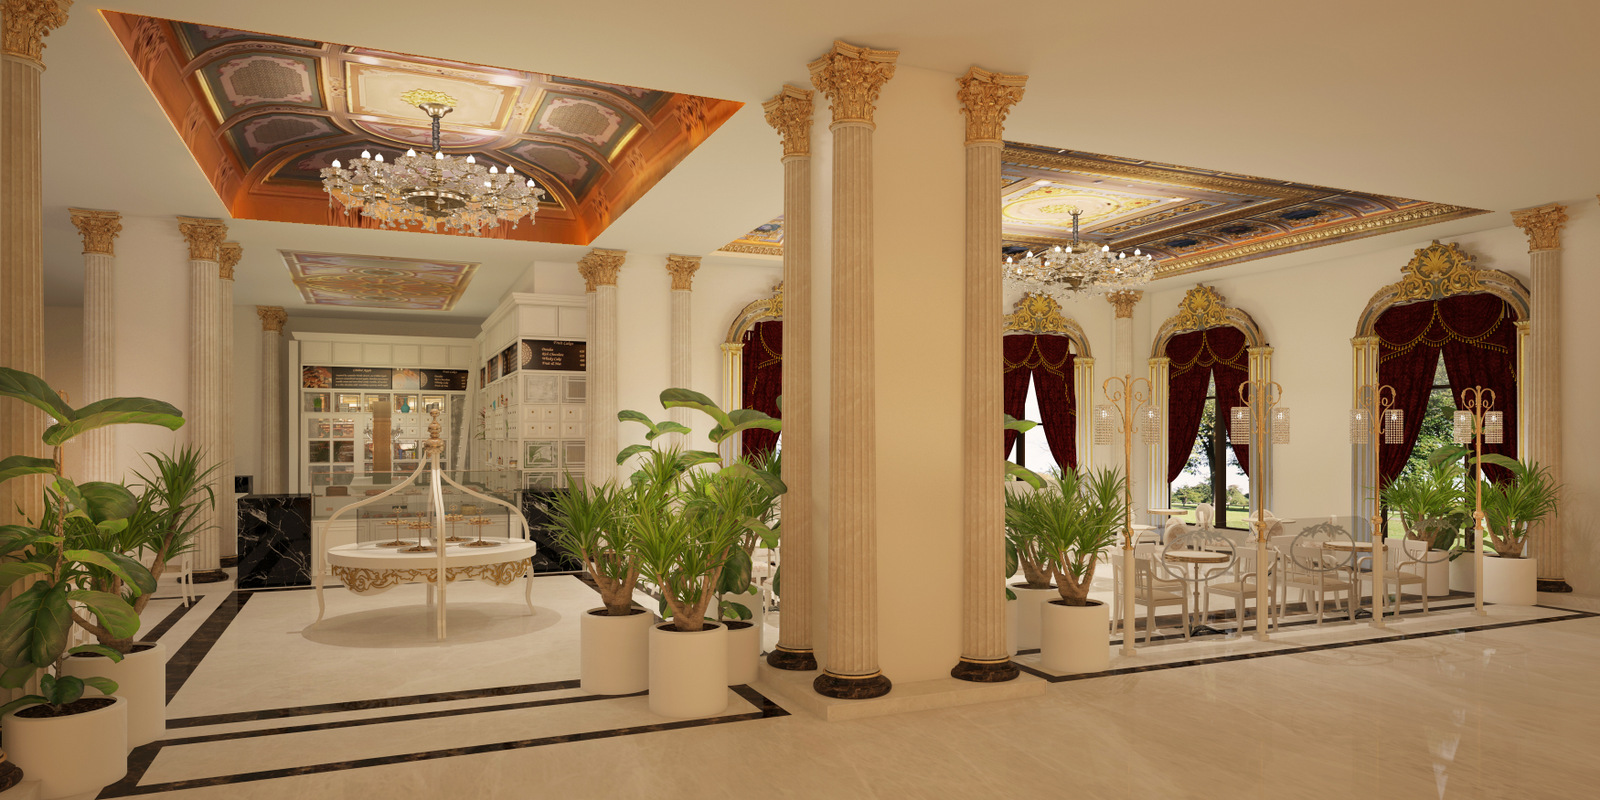 Обновленный отель Mardan Palace в Турции откроется фестивалем Coral Travel May Fest